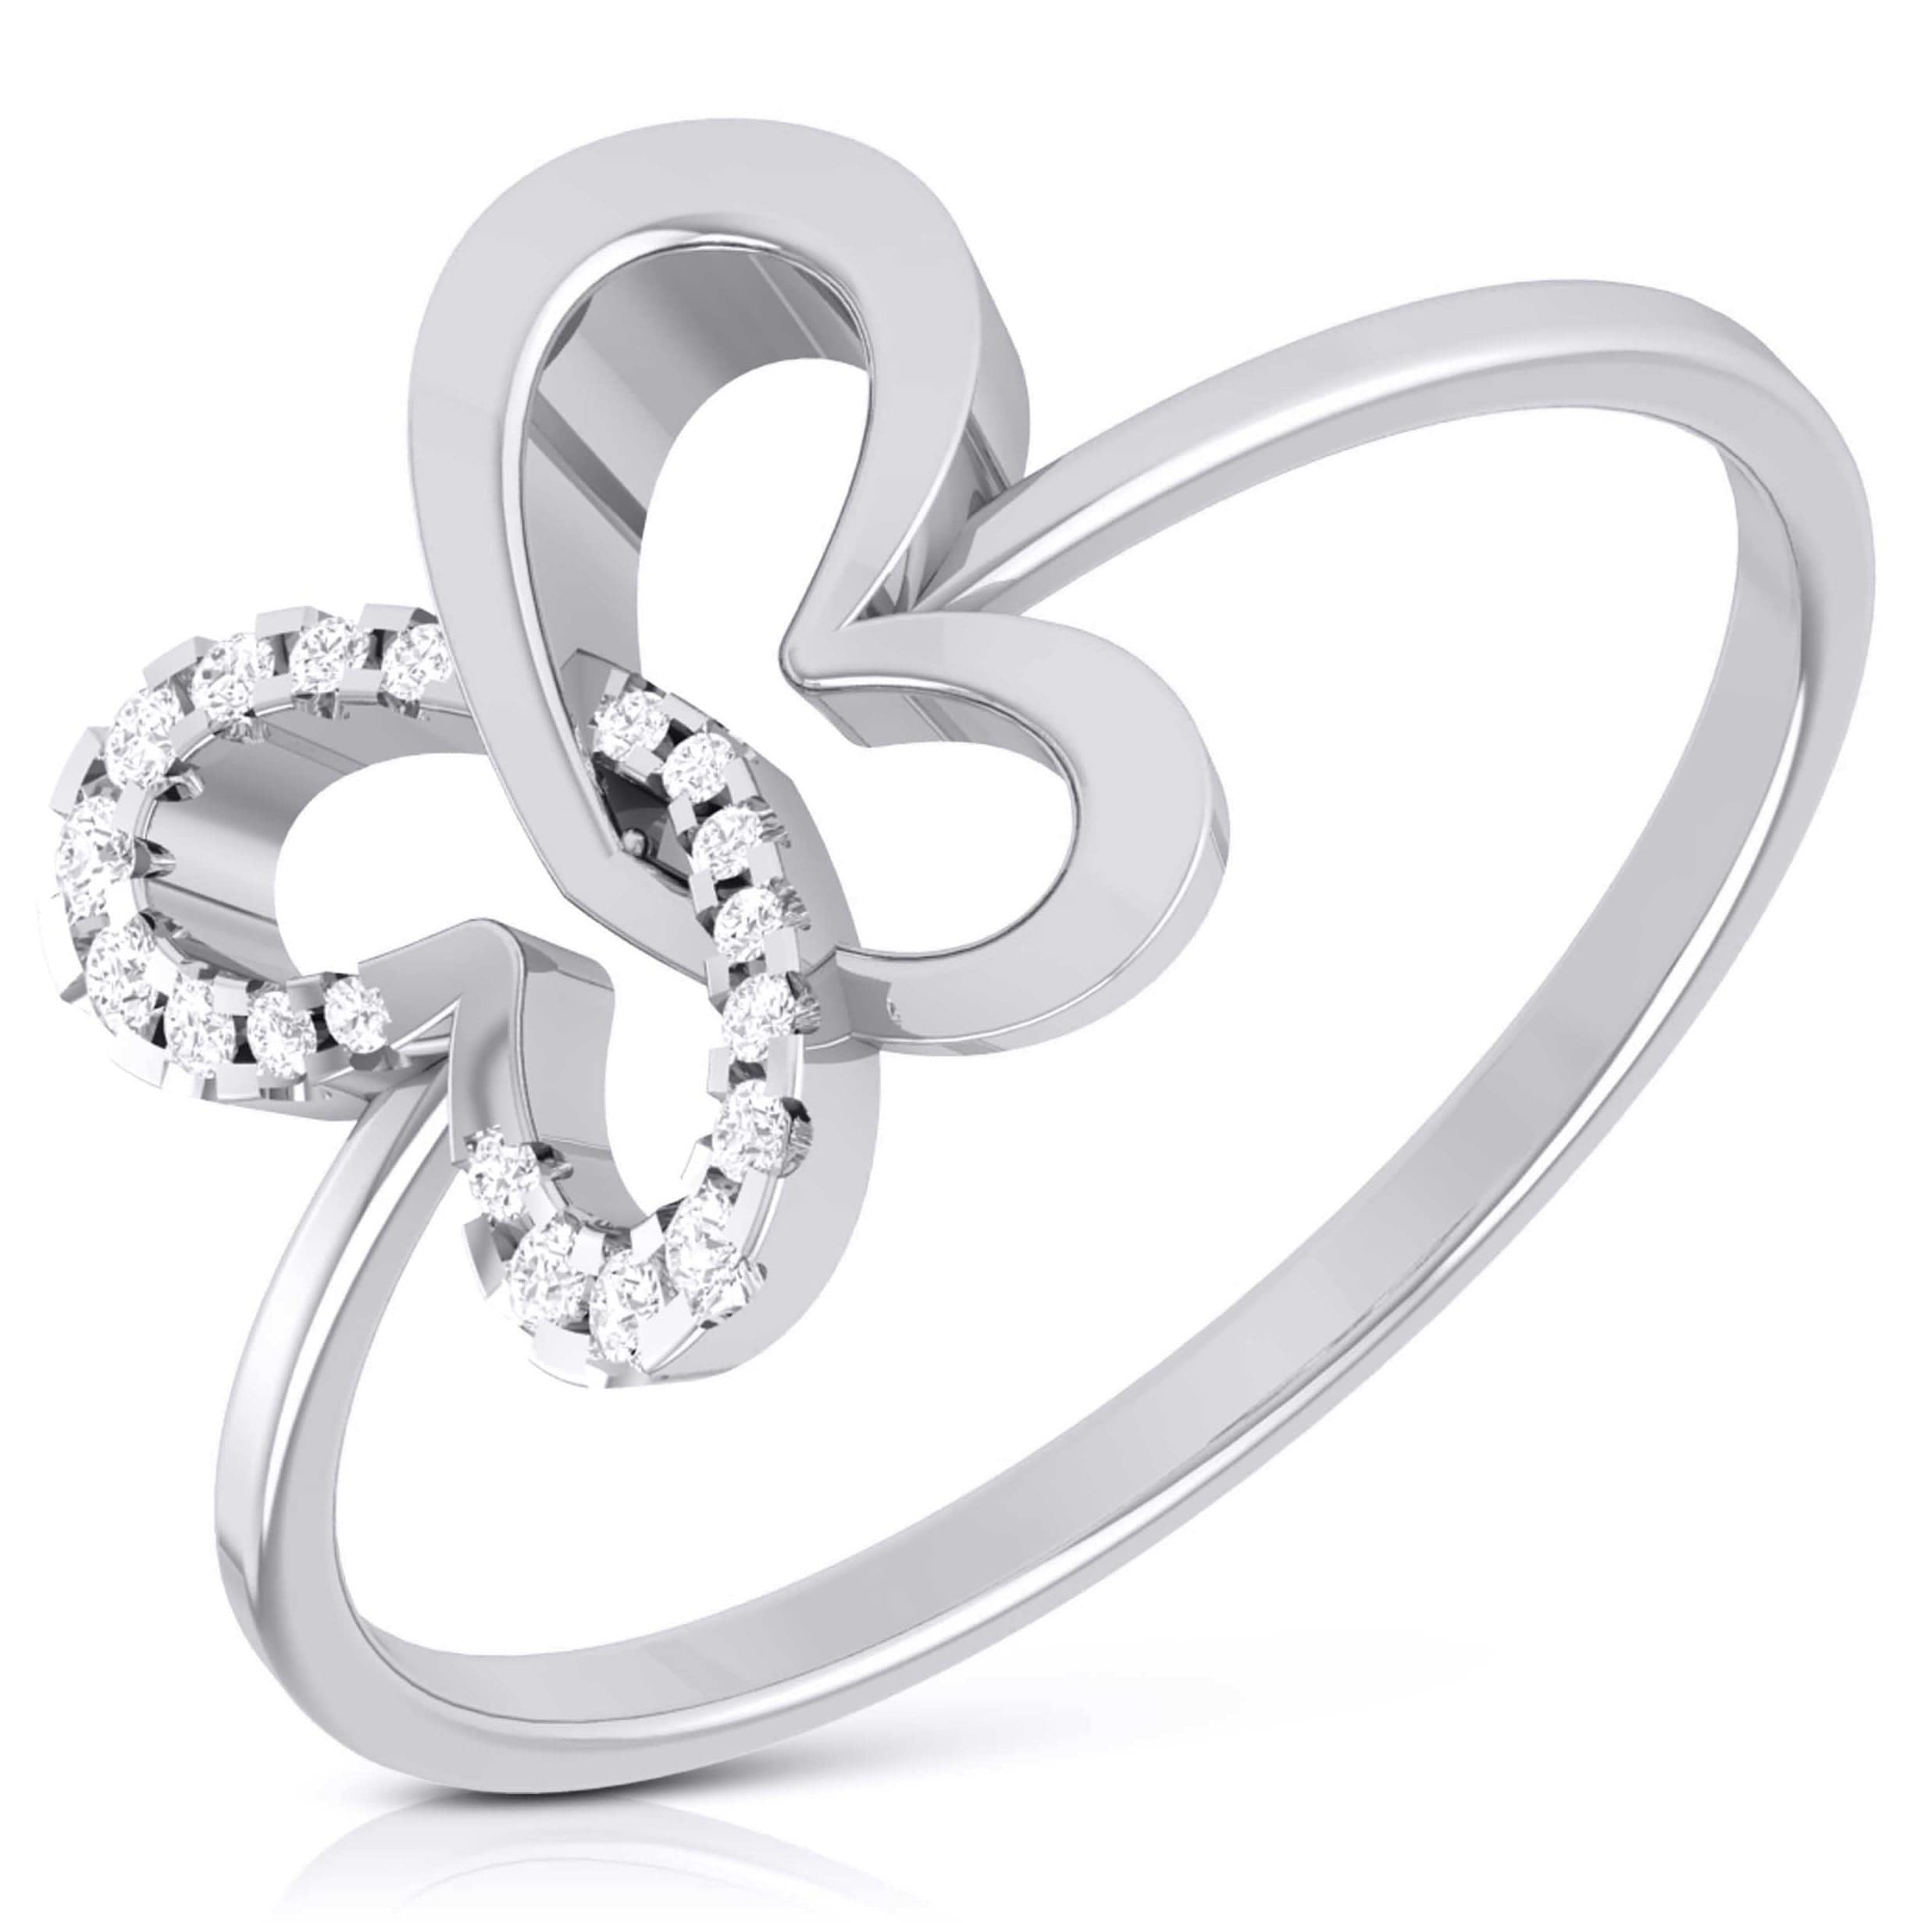 Jeulia Two Tone Twist Oval Cut Sterling Silver Ring | Silver rings online,  Sterling silver rings, Jeulia